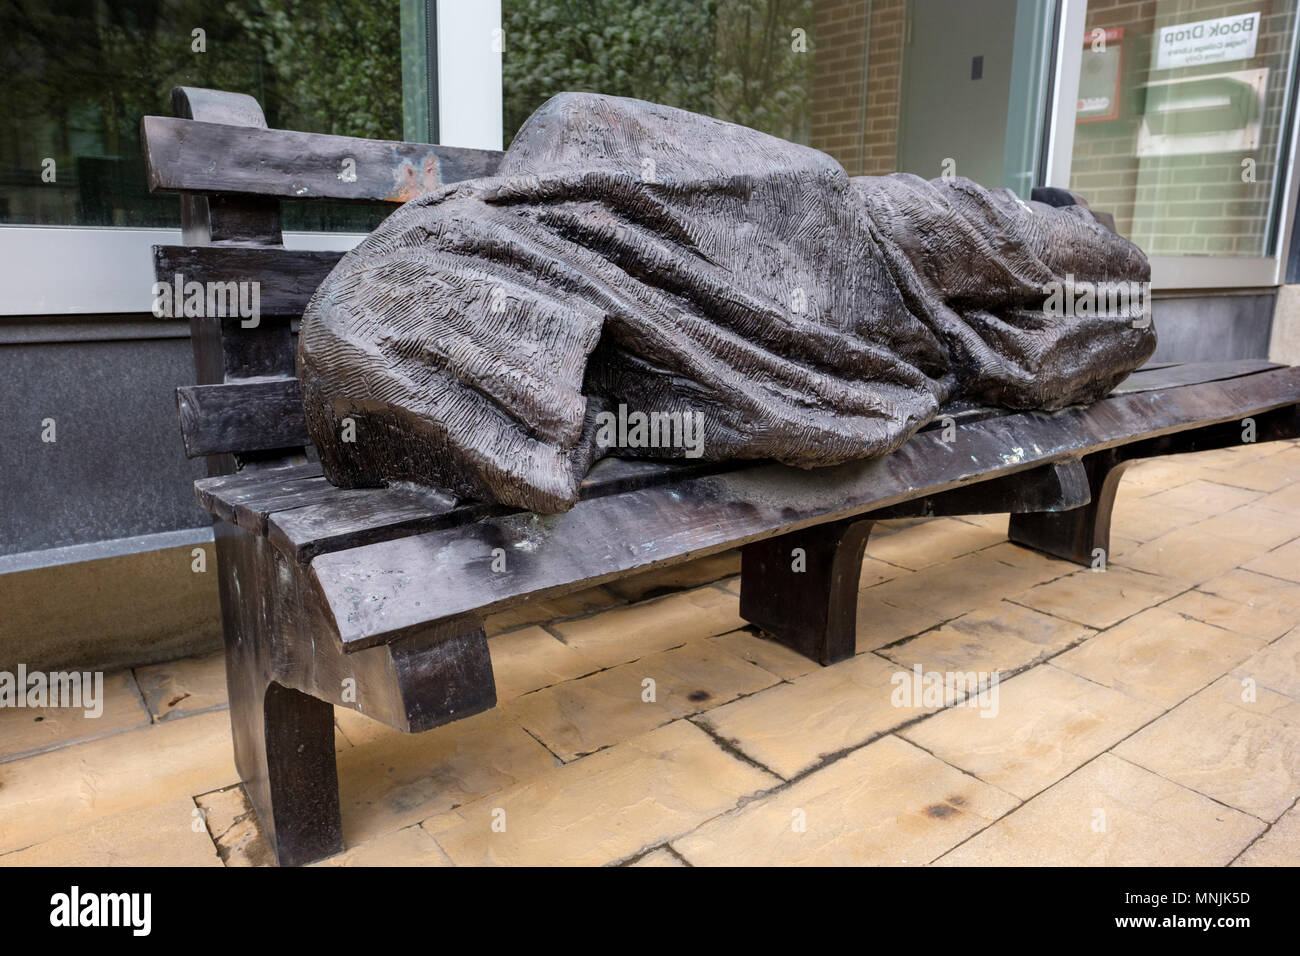 Jésus, sans-abri ou sans-abri, la statue de Jésus par l'artiste canadien Timothy Schmaltz, Regis College, Université de Toronto, Ontario, Canada Banque D'Images